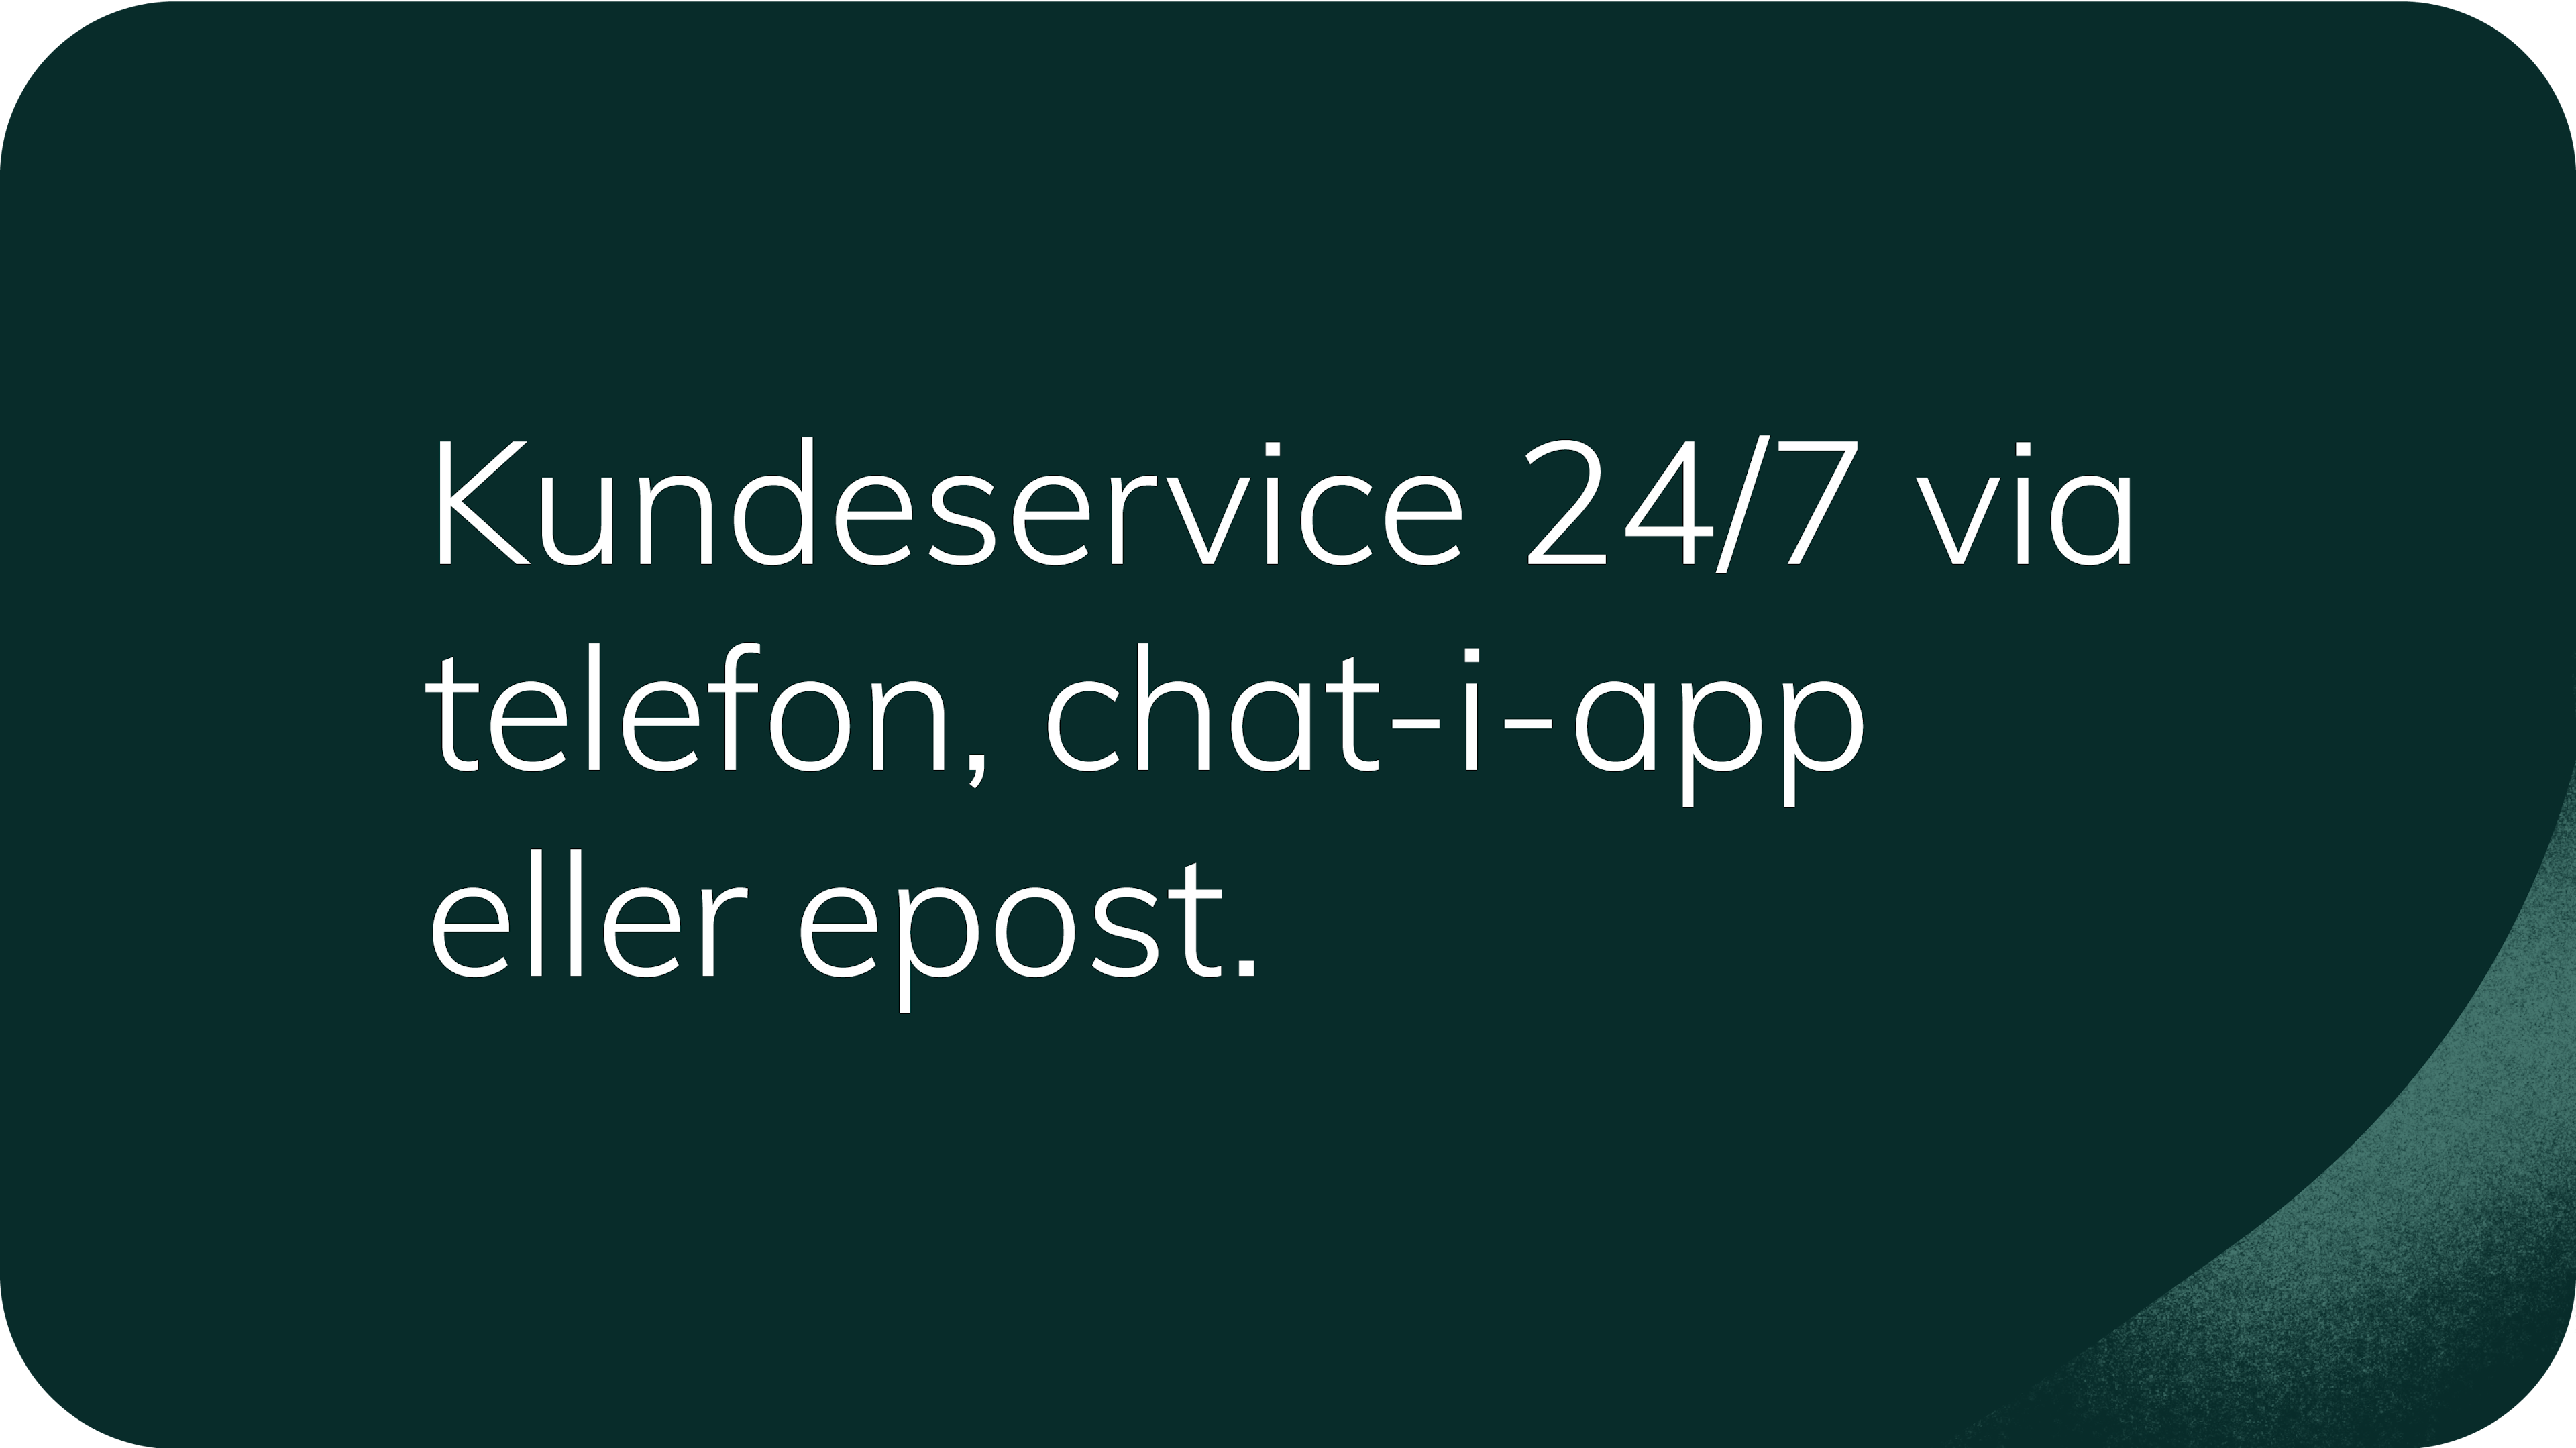 Kundeservice 24/7 via telefon, chat-i-app eller epost